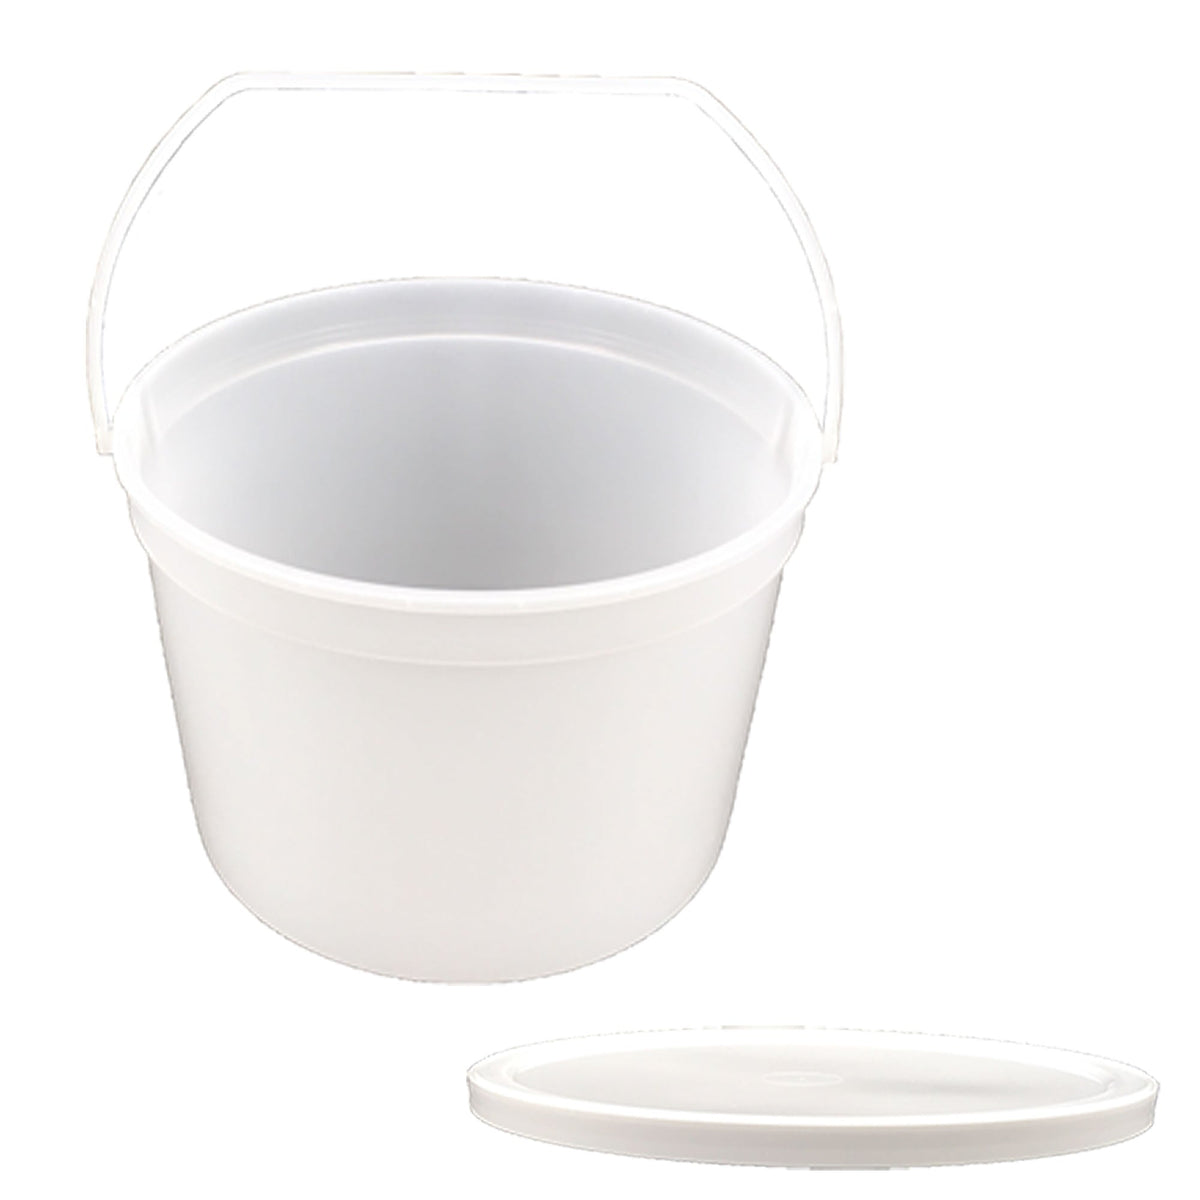 Plastic 4 litre Pail with lid